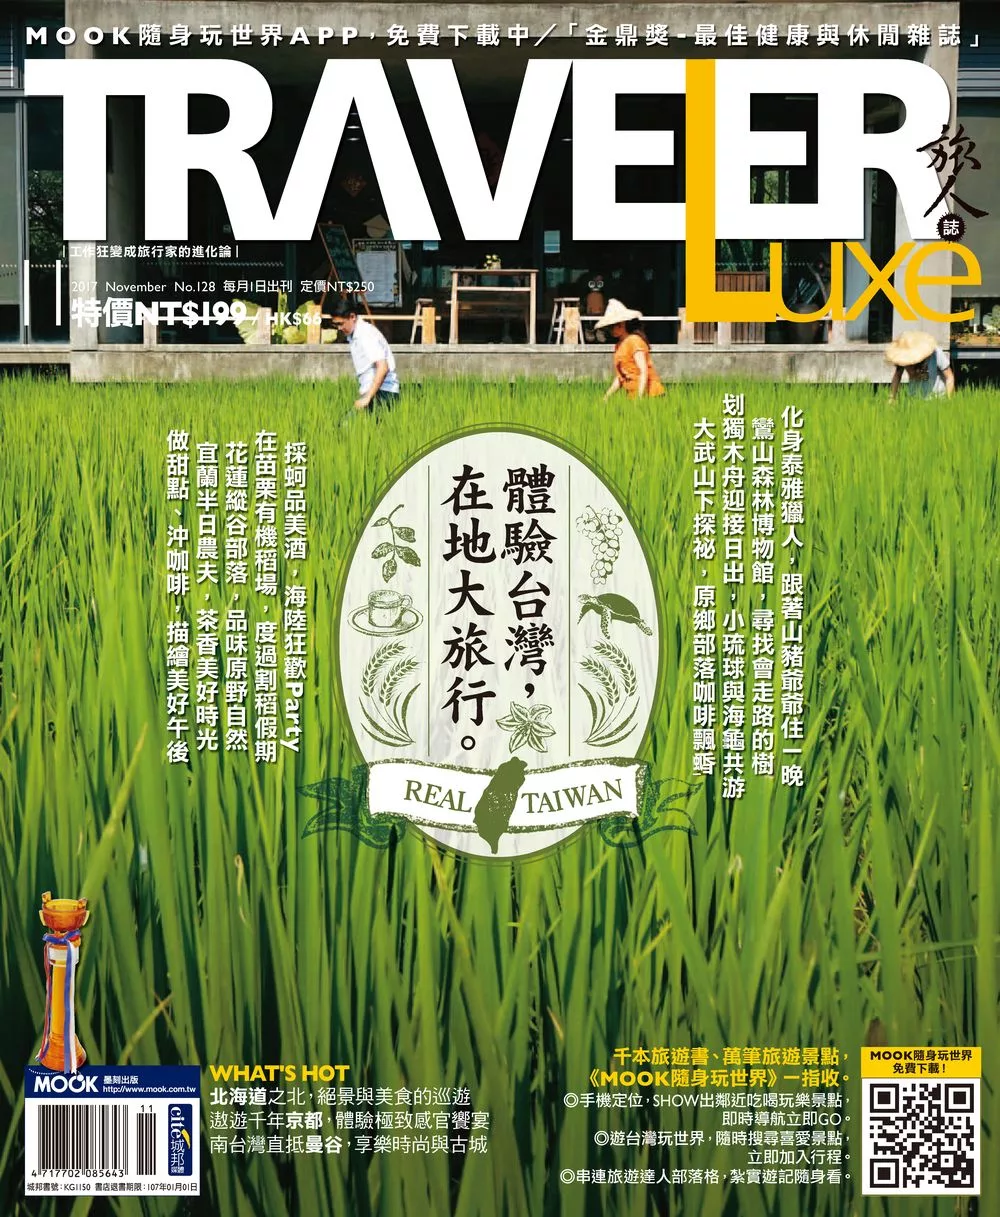 TRAVELER LUXE 旅人誌 11月號/2017第150期 (電子雜誌)